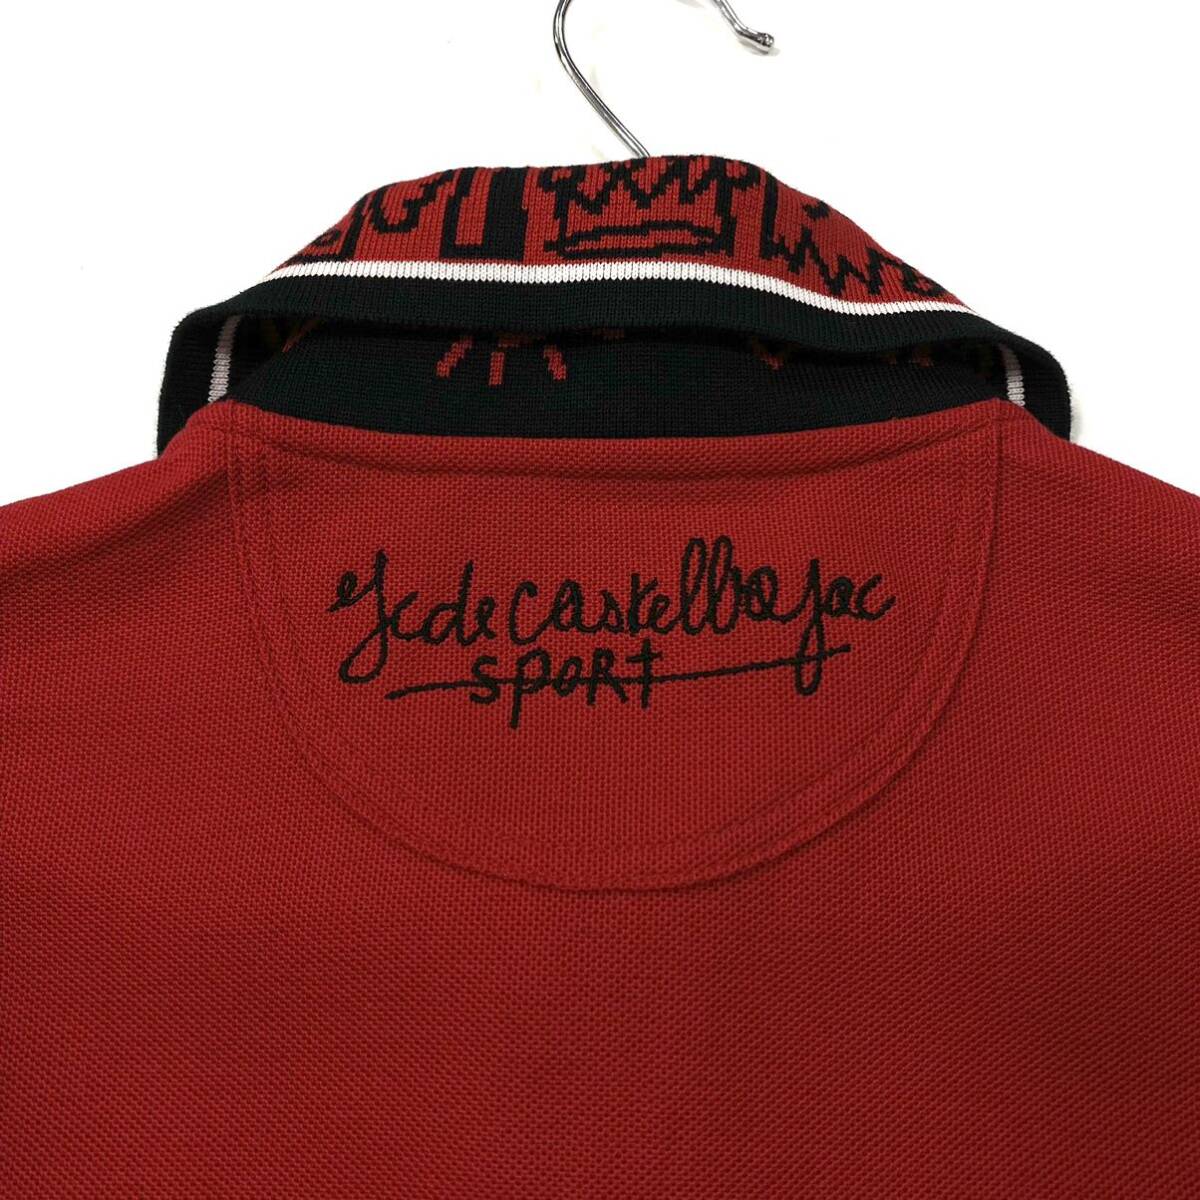 良品CASTELBAJAC(カステルバジャック)半袖ポロシャツ 刺繍ロゴ 鹿の子 メンズ3 レッド系_画像5